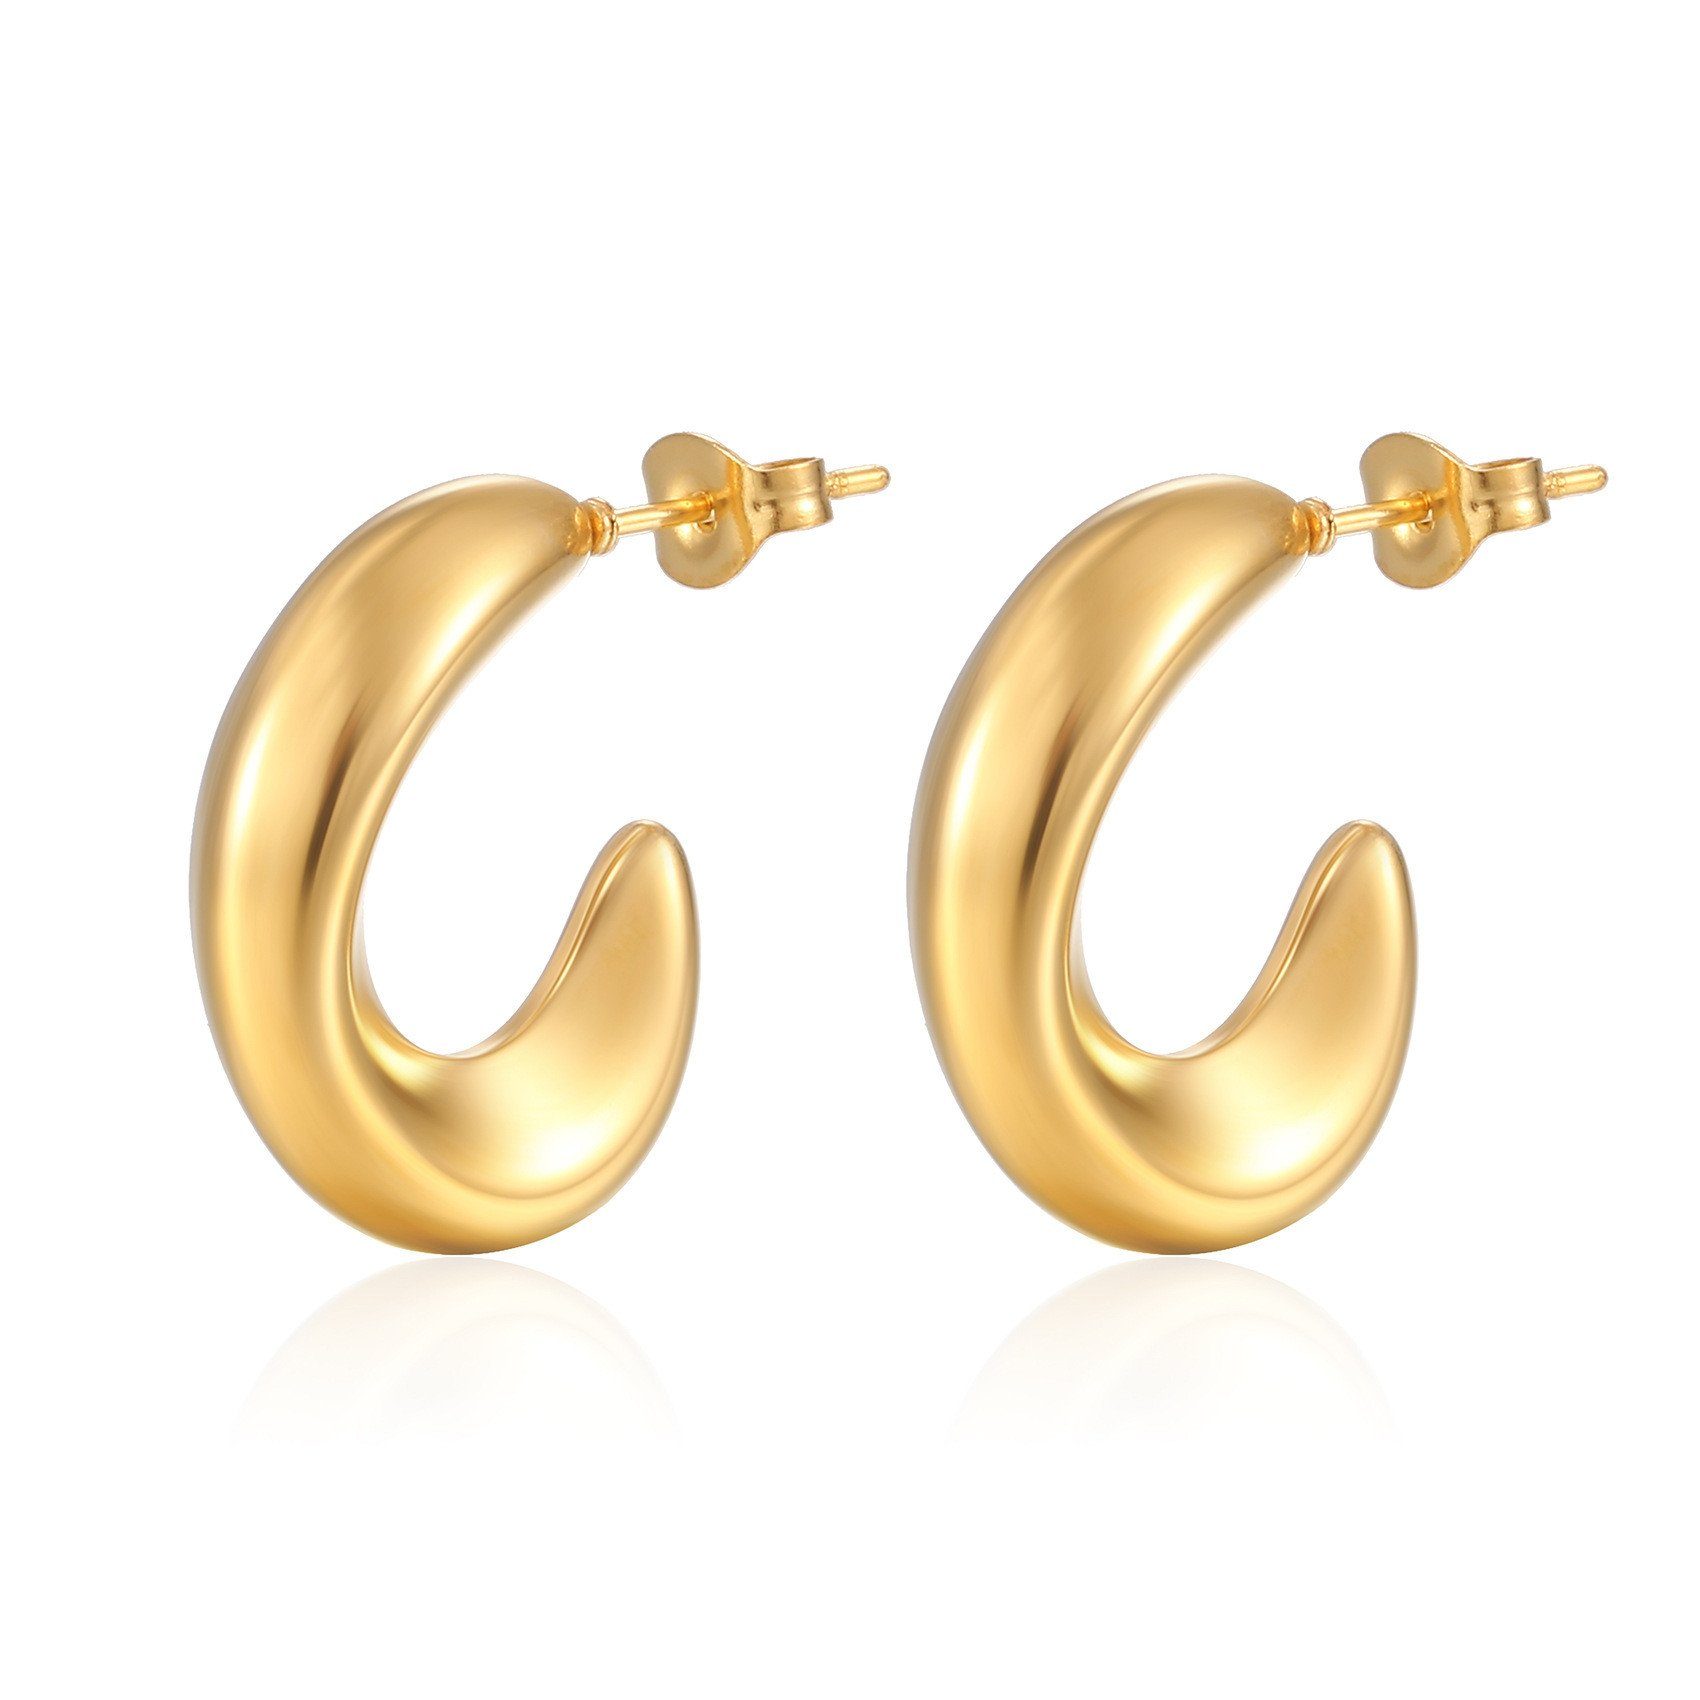 XDeer Paar Creolen Ohrringe,18K Gold/Silber Leicht Tropfen Ohrringe Modisch Ohrringe, Ohrringe für Damen Mädchen